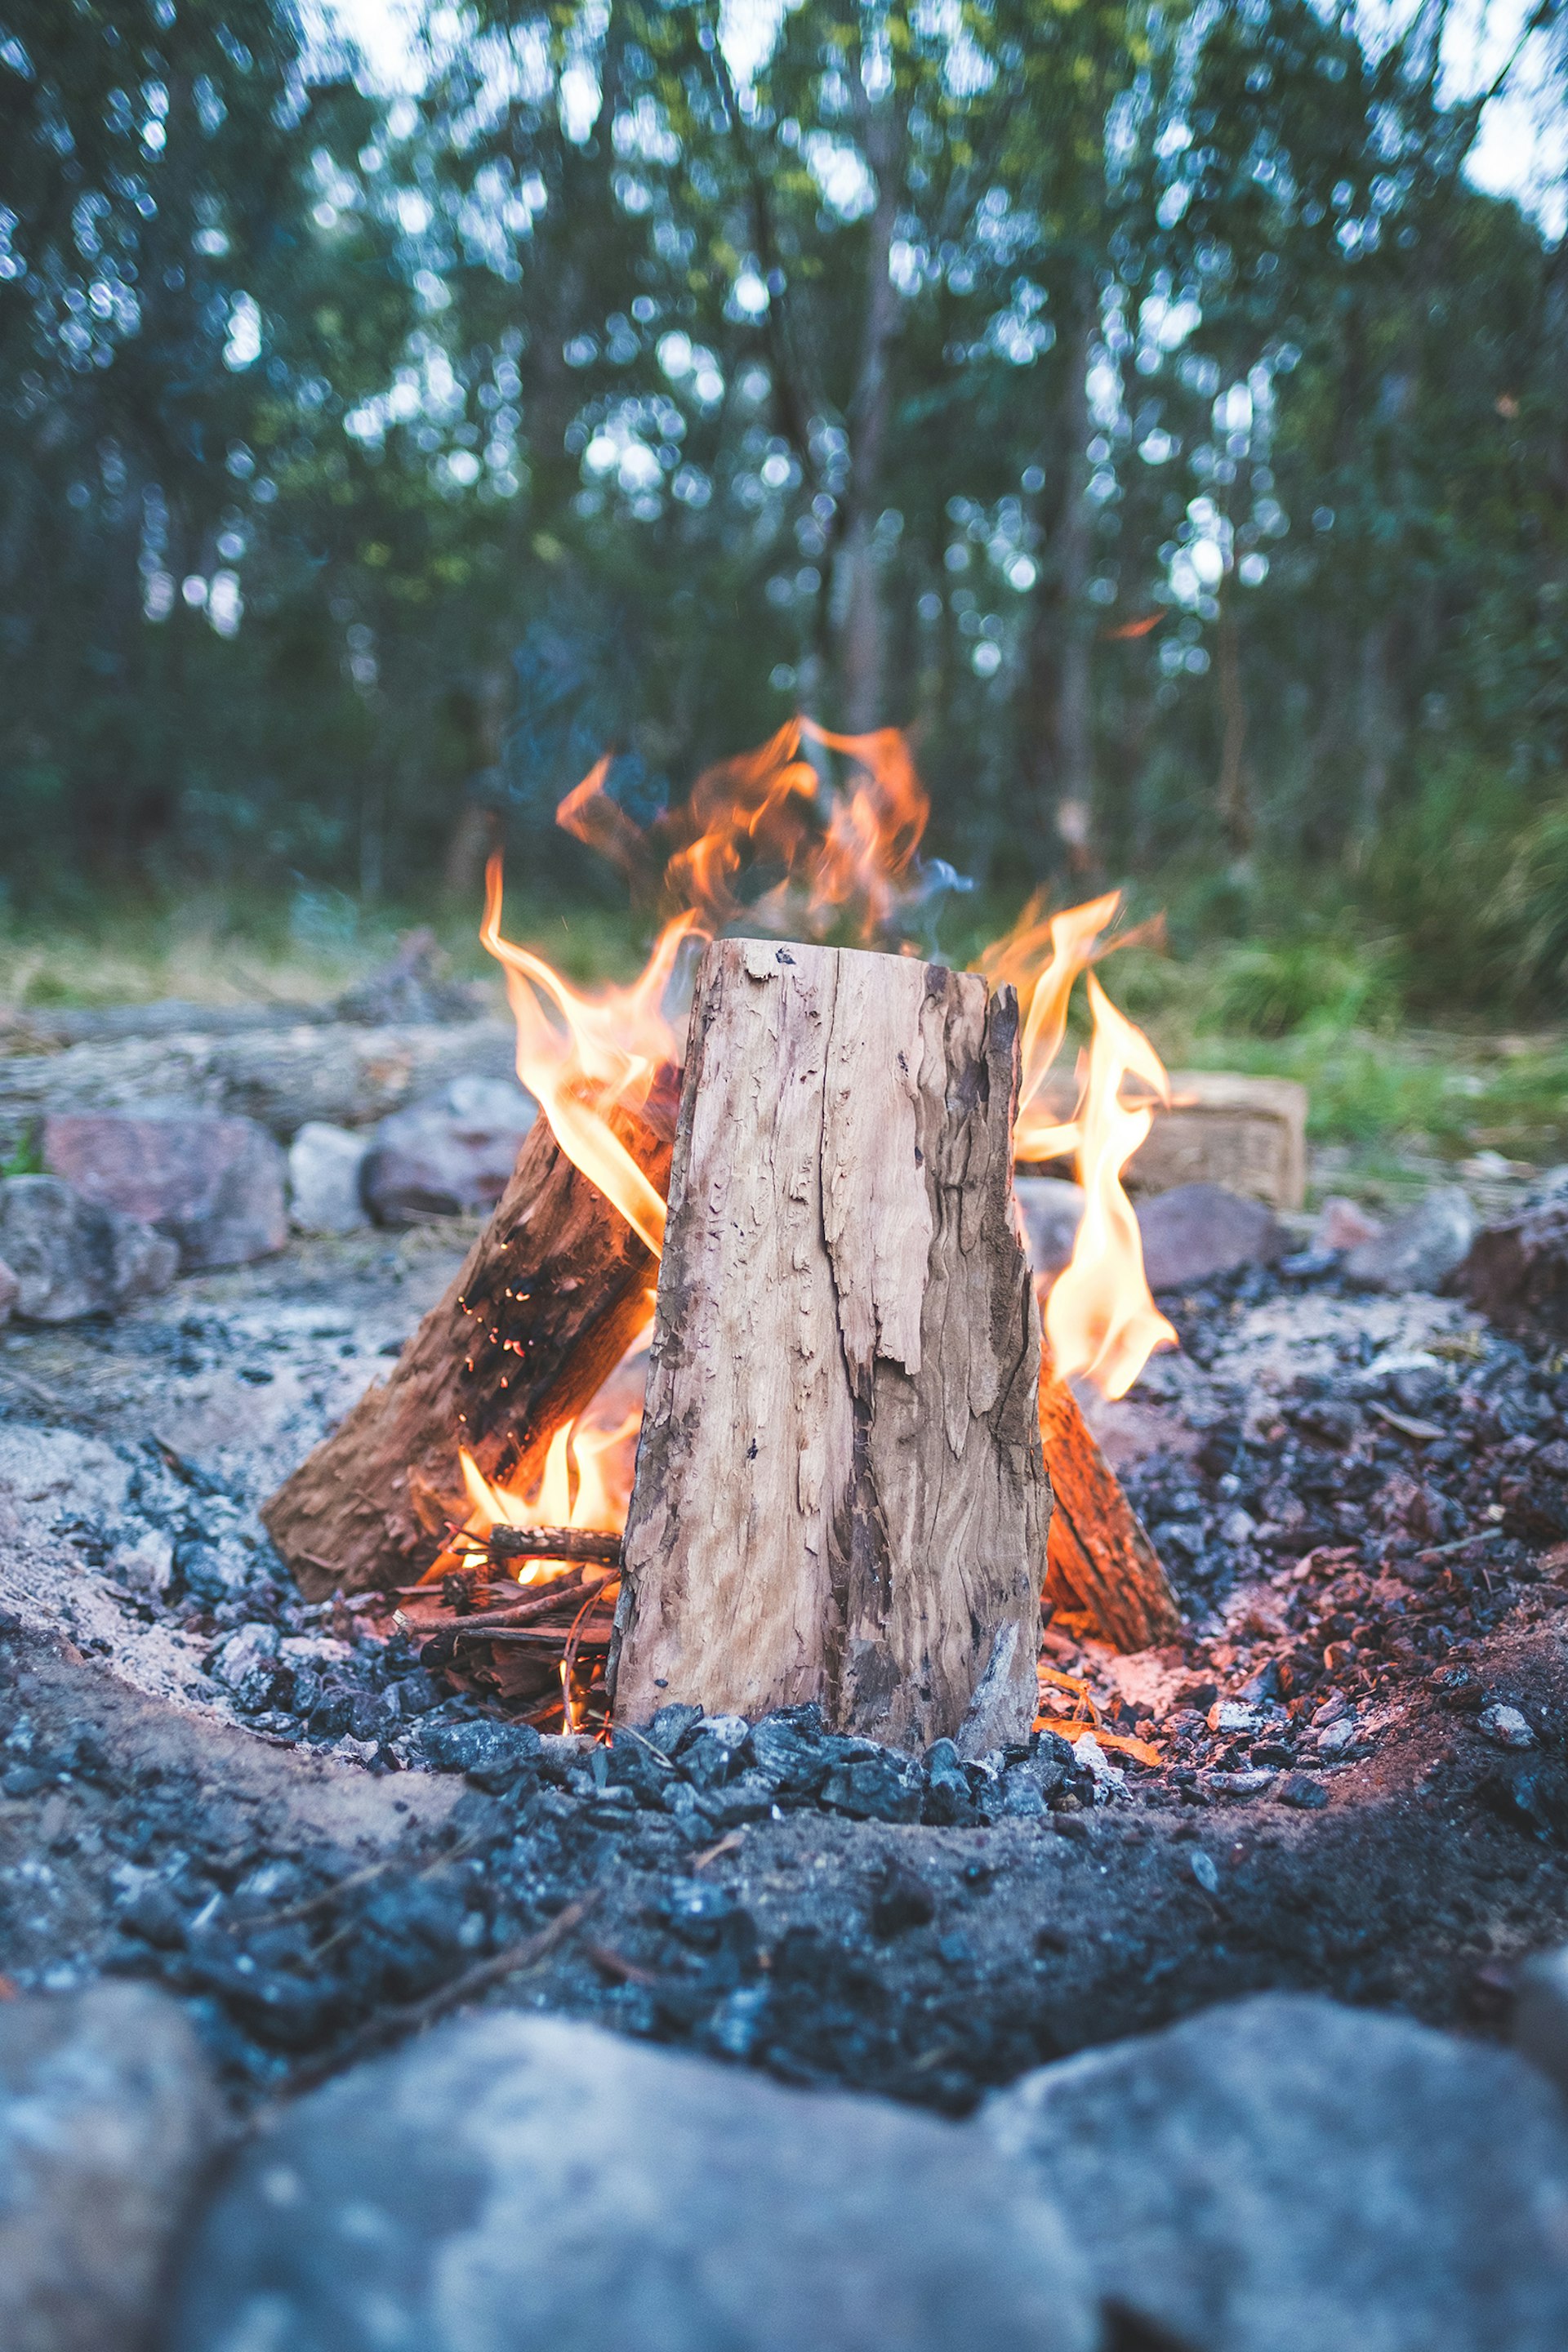  Close-up of a campfire